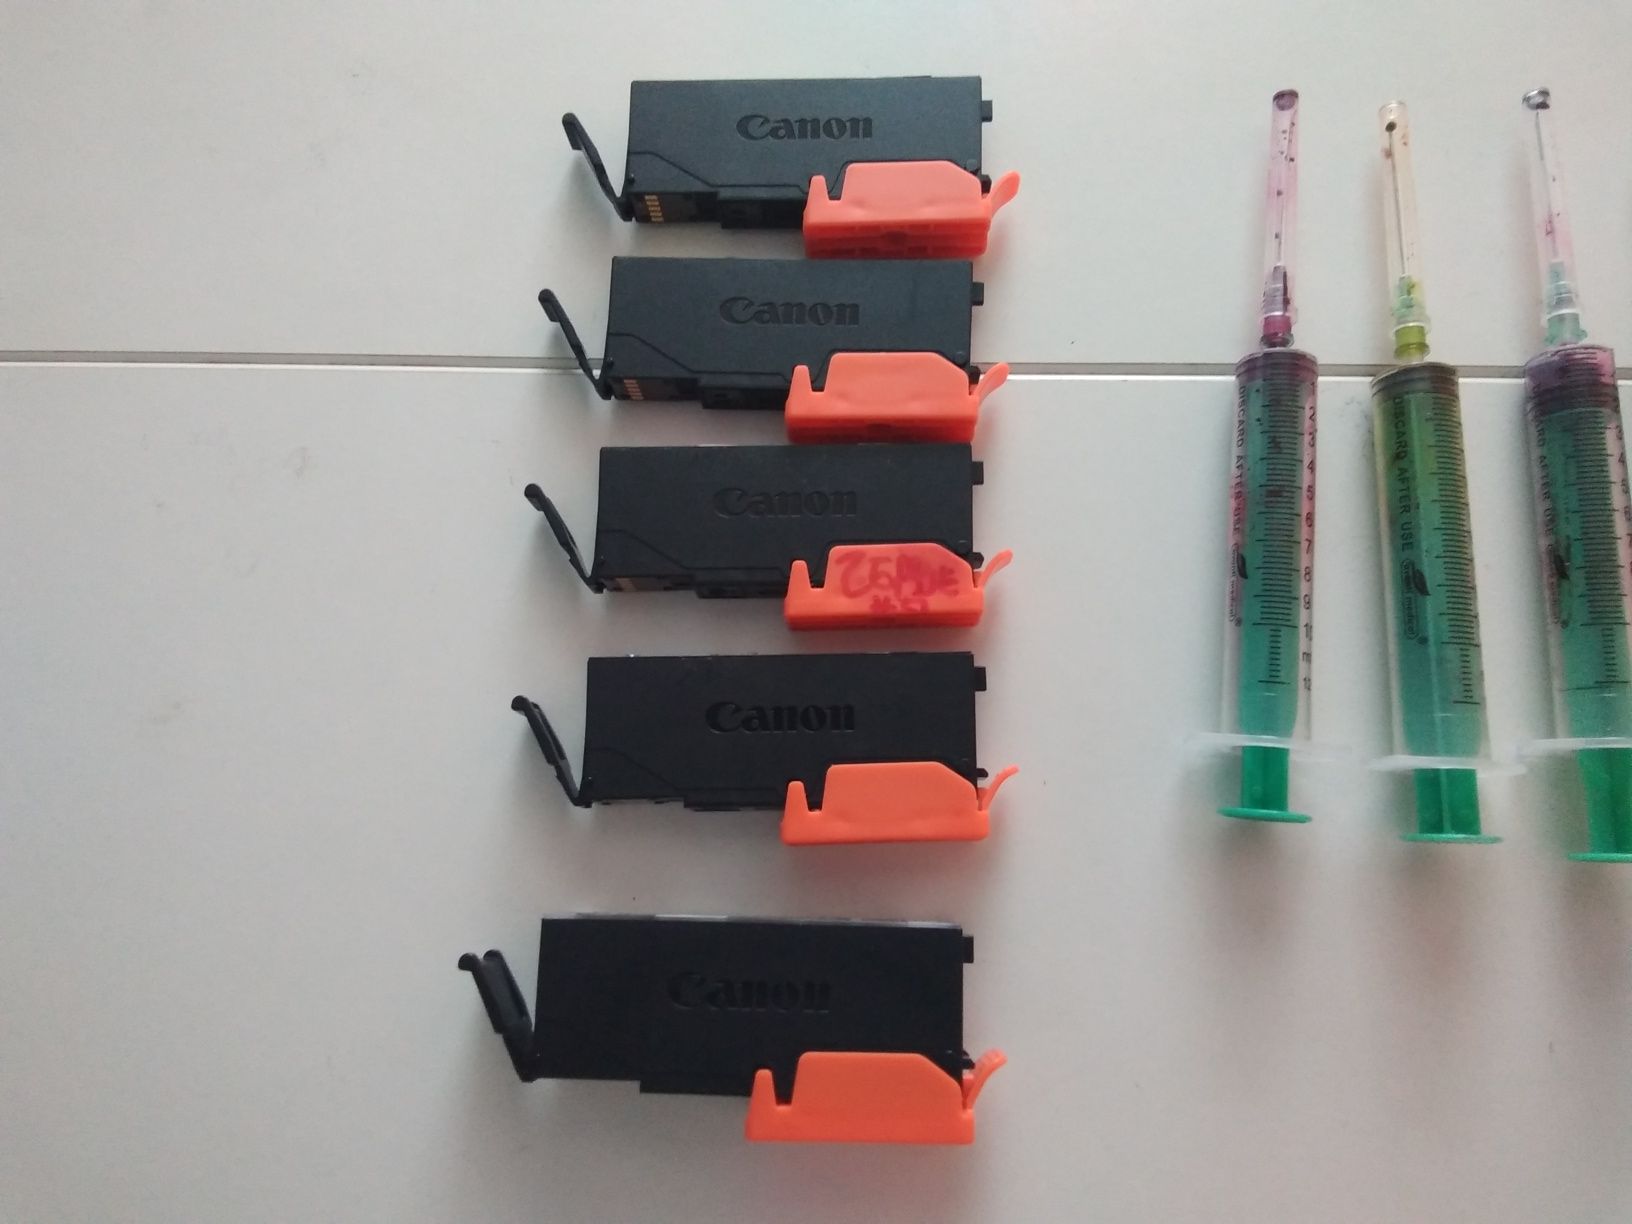 Празни касети за принтери канон-за презареждане в домашни условия